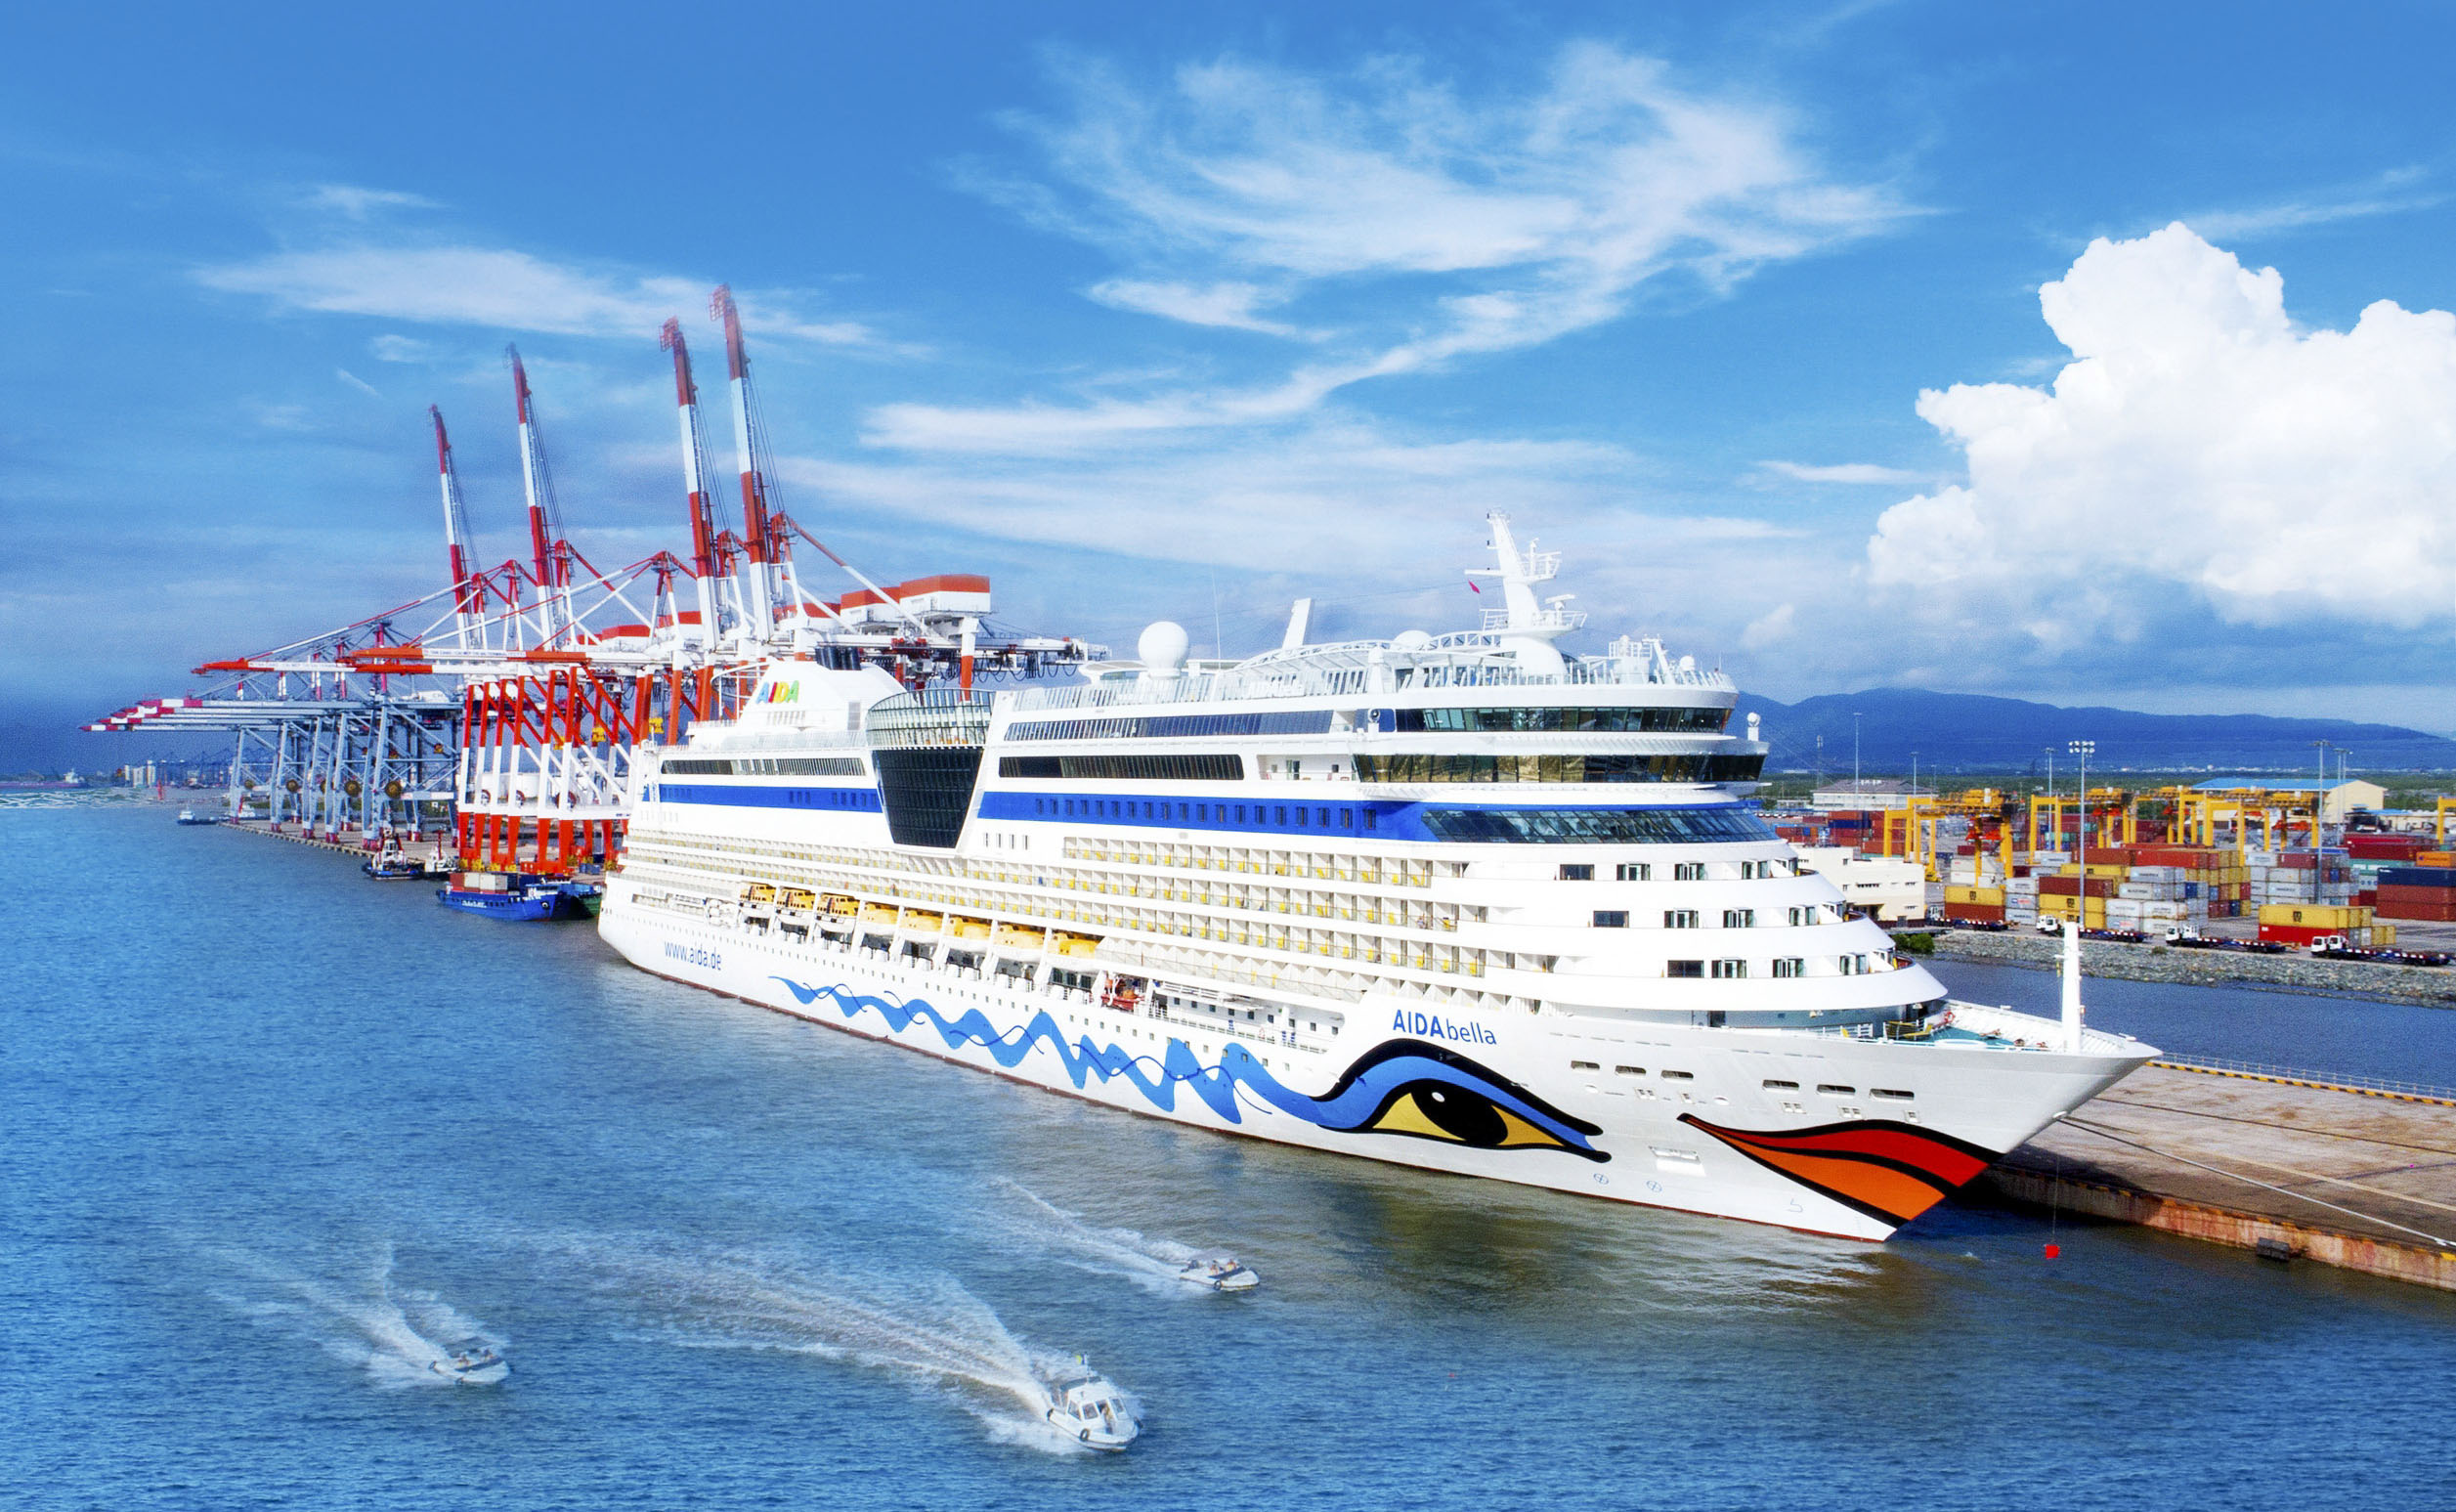 Du lịch được xác định là 1 trong 4 trụ cột kinh tế của tỉnh. Trong ảnh: Tàu du lịch Aida Bella thuộc hãng tàu biển Aida Cruises cập cảng Quốc tế Tân Cảng - Cái Mép.